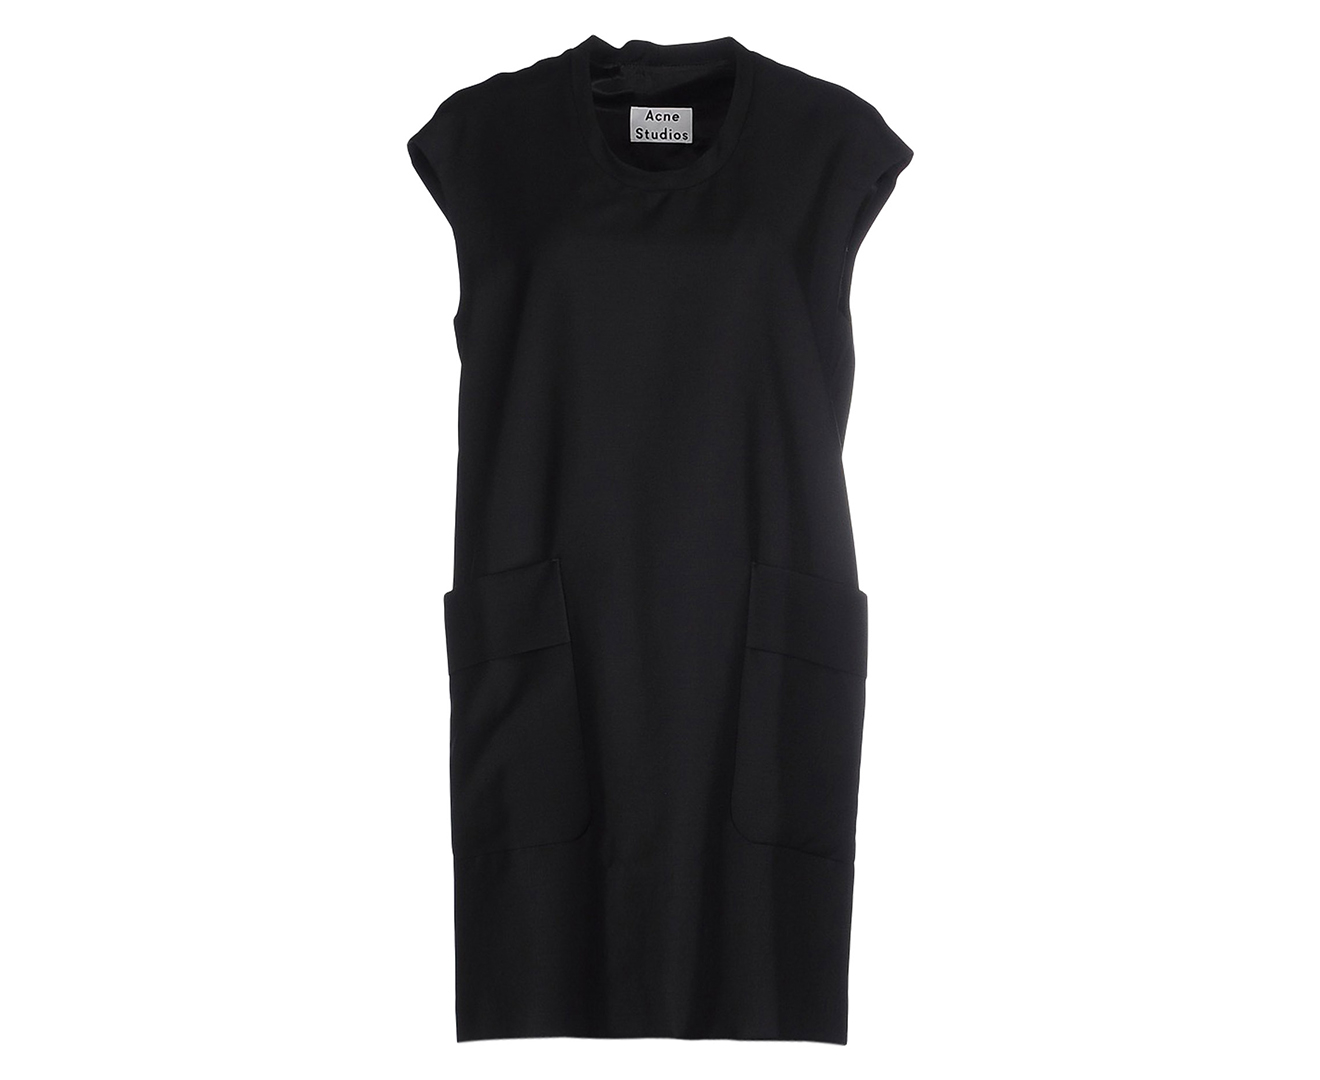 Acne Studios Women's Wool Short Dress - Black | Www.catch.co.nz